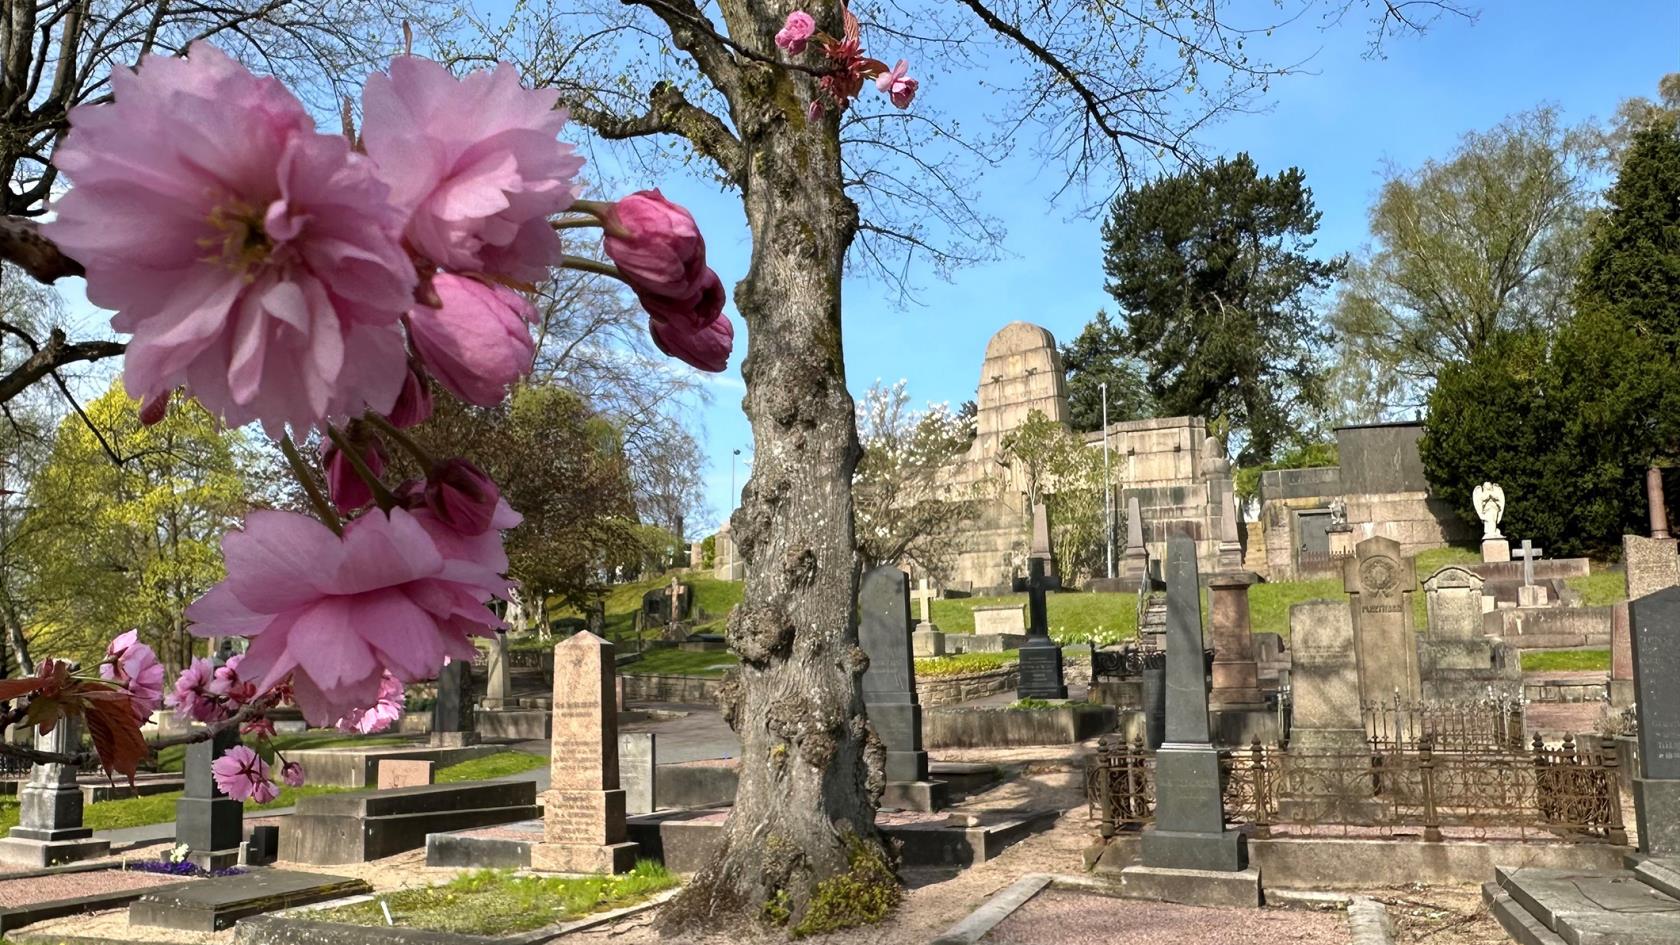 Gammalt kyrkogård med stora gravmonumnet och blommande körsbärsträd i förgrunden